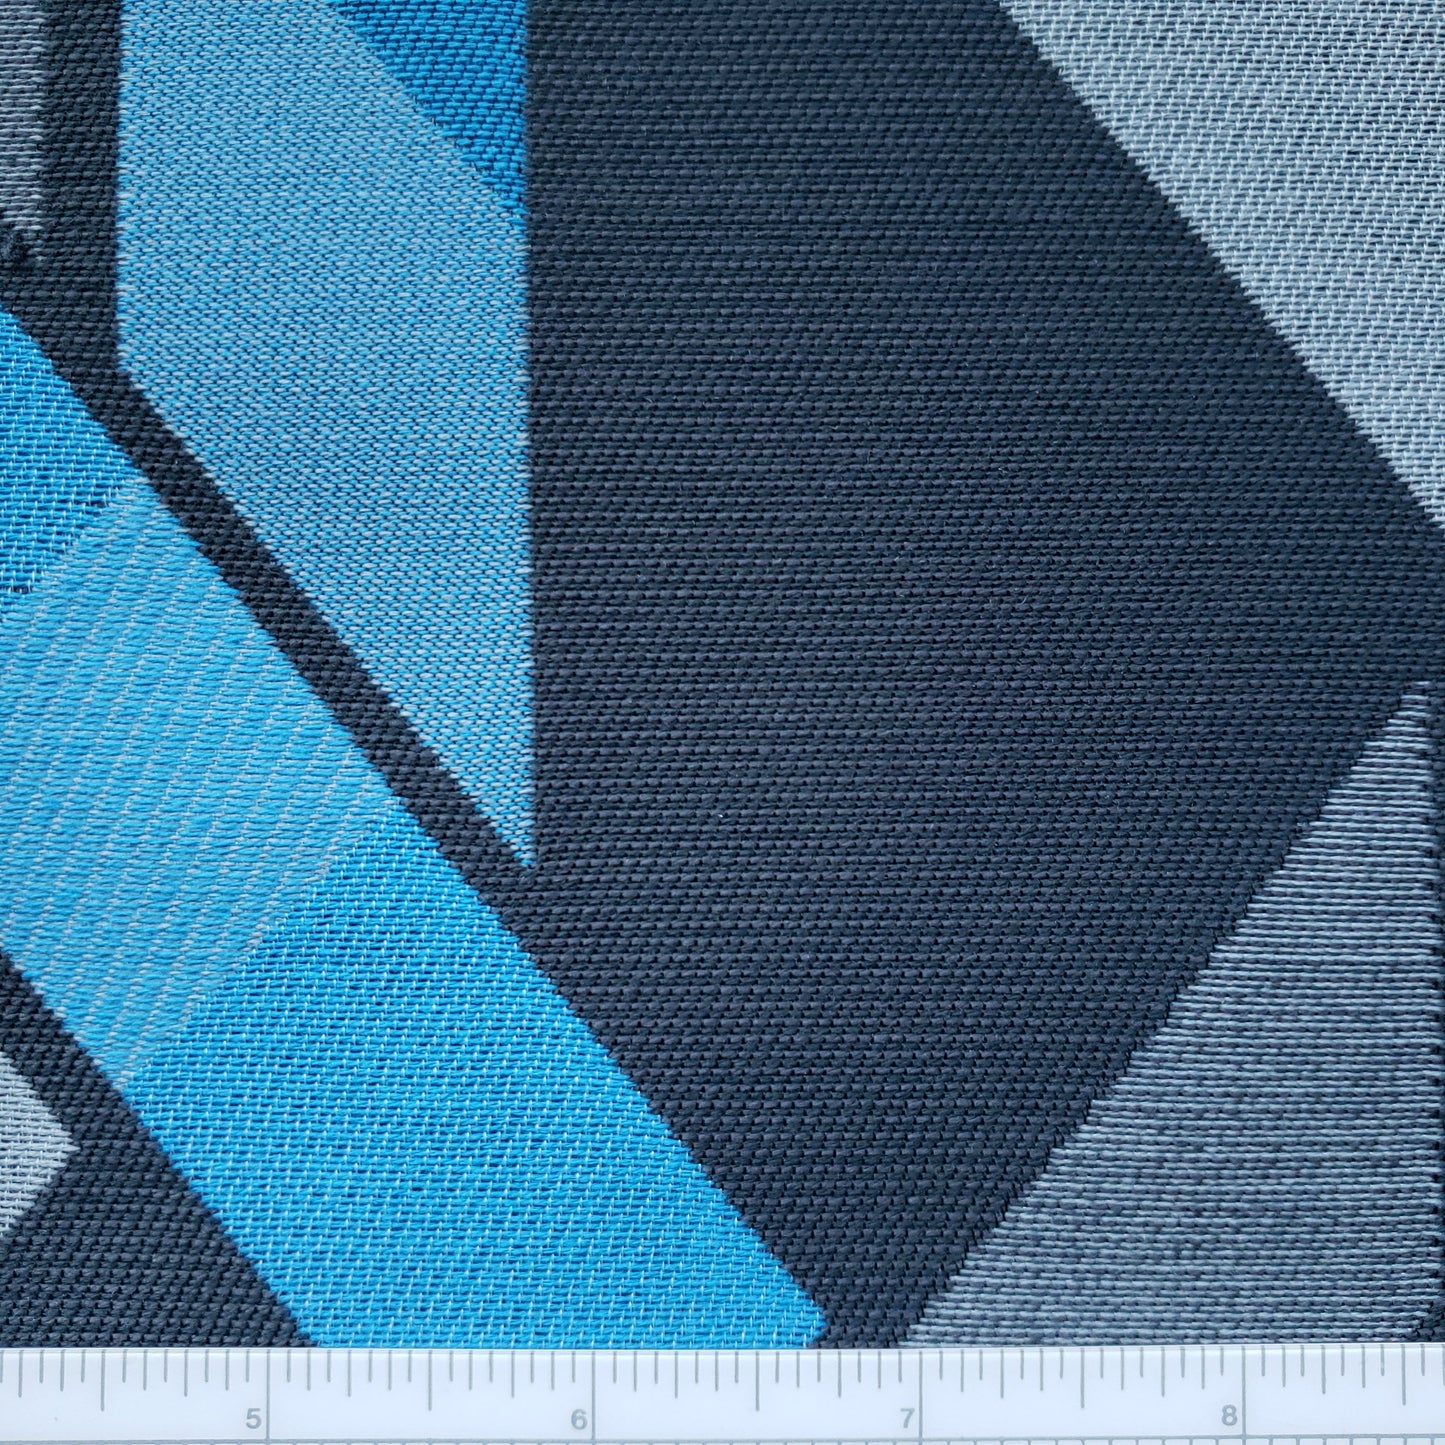 Pompidou Center Fabric